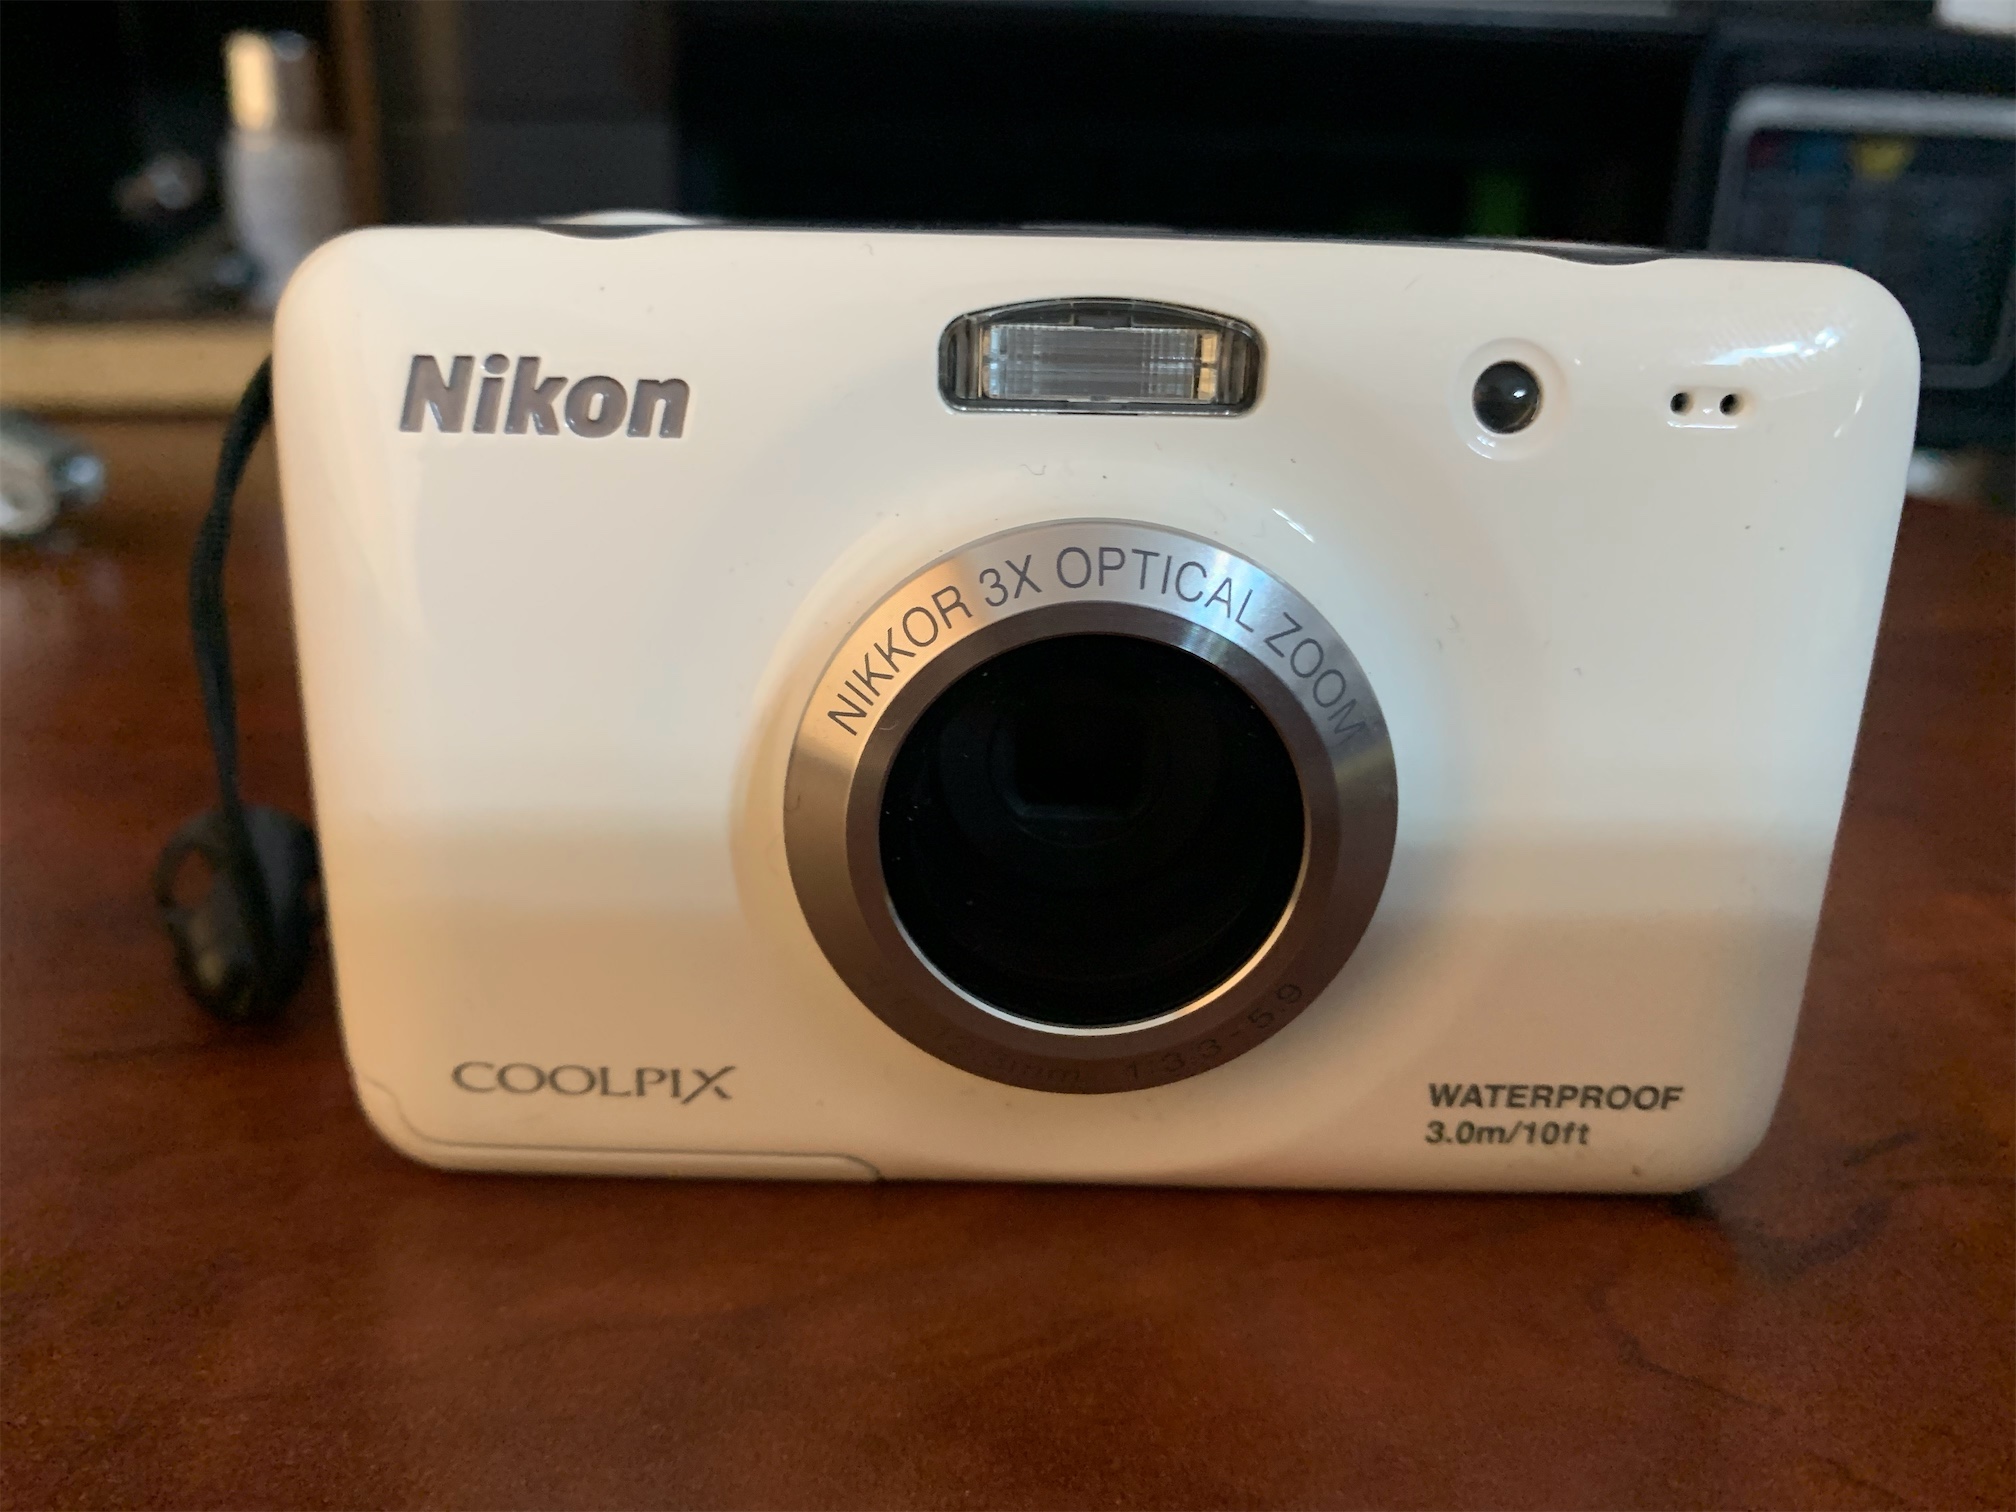 camaras y audio - Cámara Nikon Waterproof 